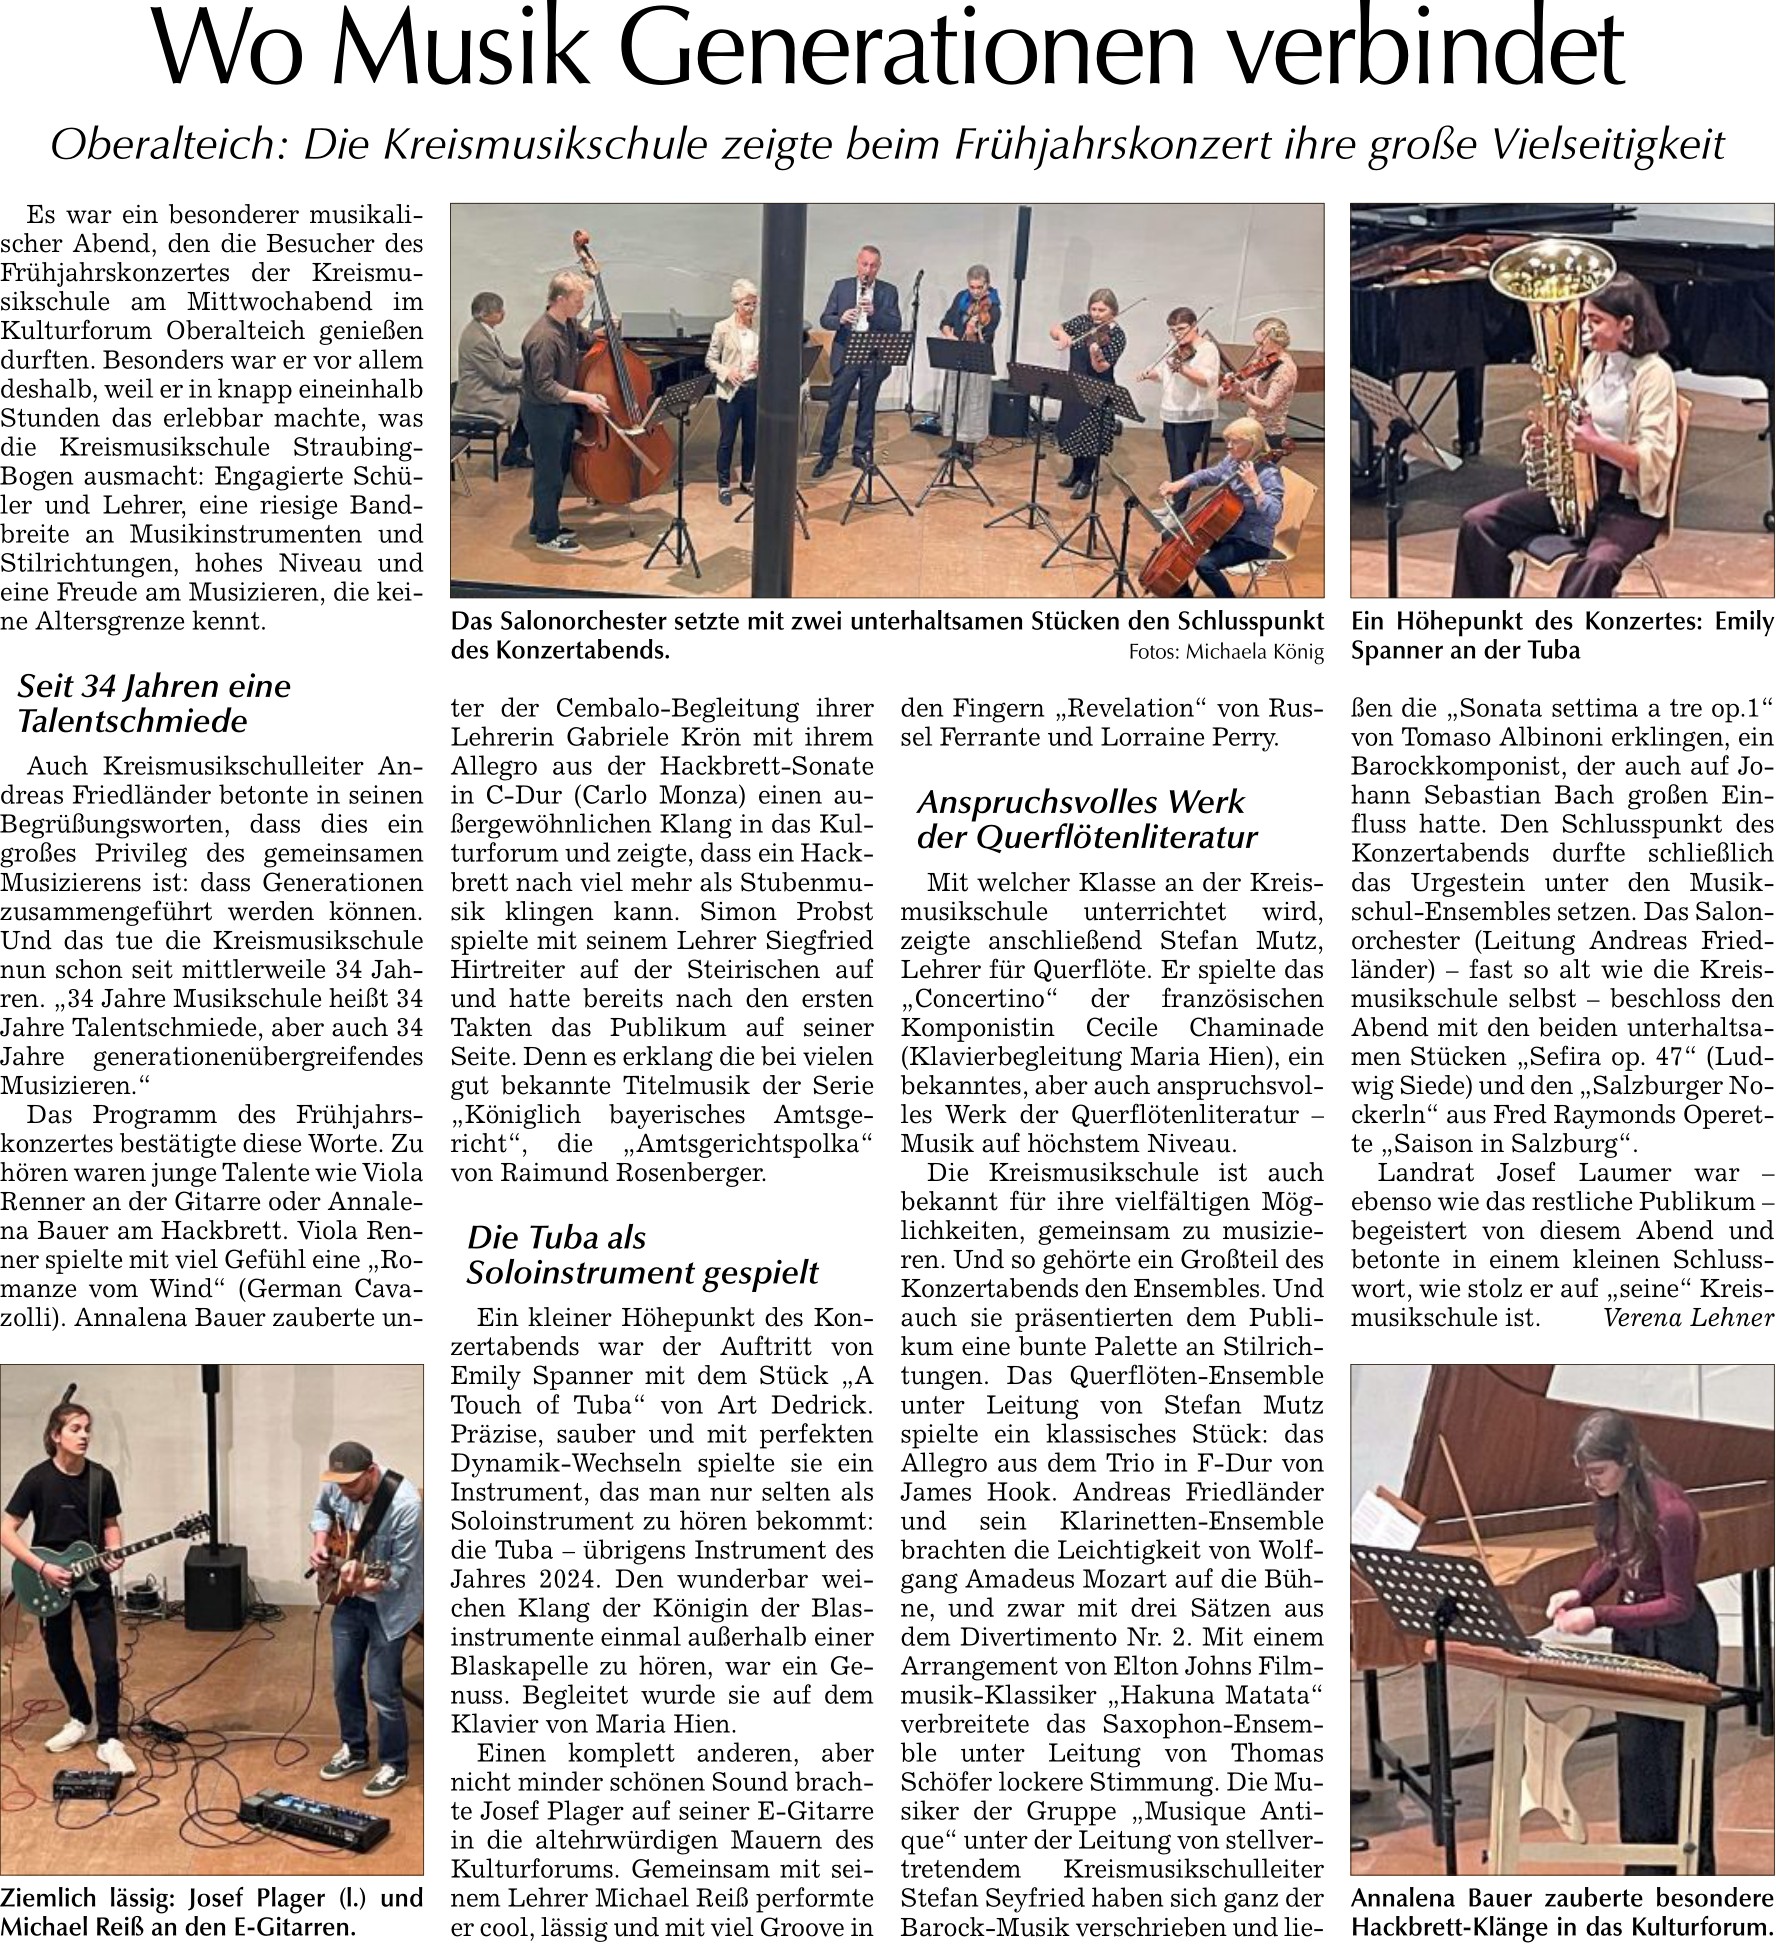 Bild zu "Wo Musik Generationen verbindet", Bogener Zeitung 11.5.2024